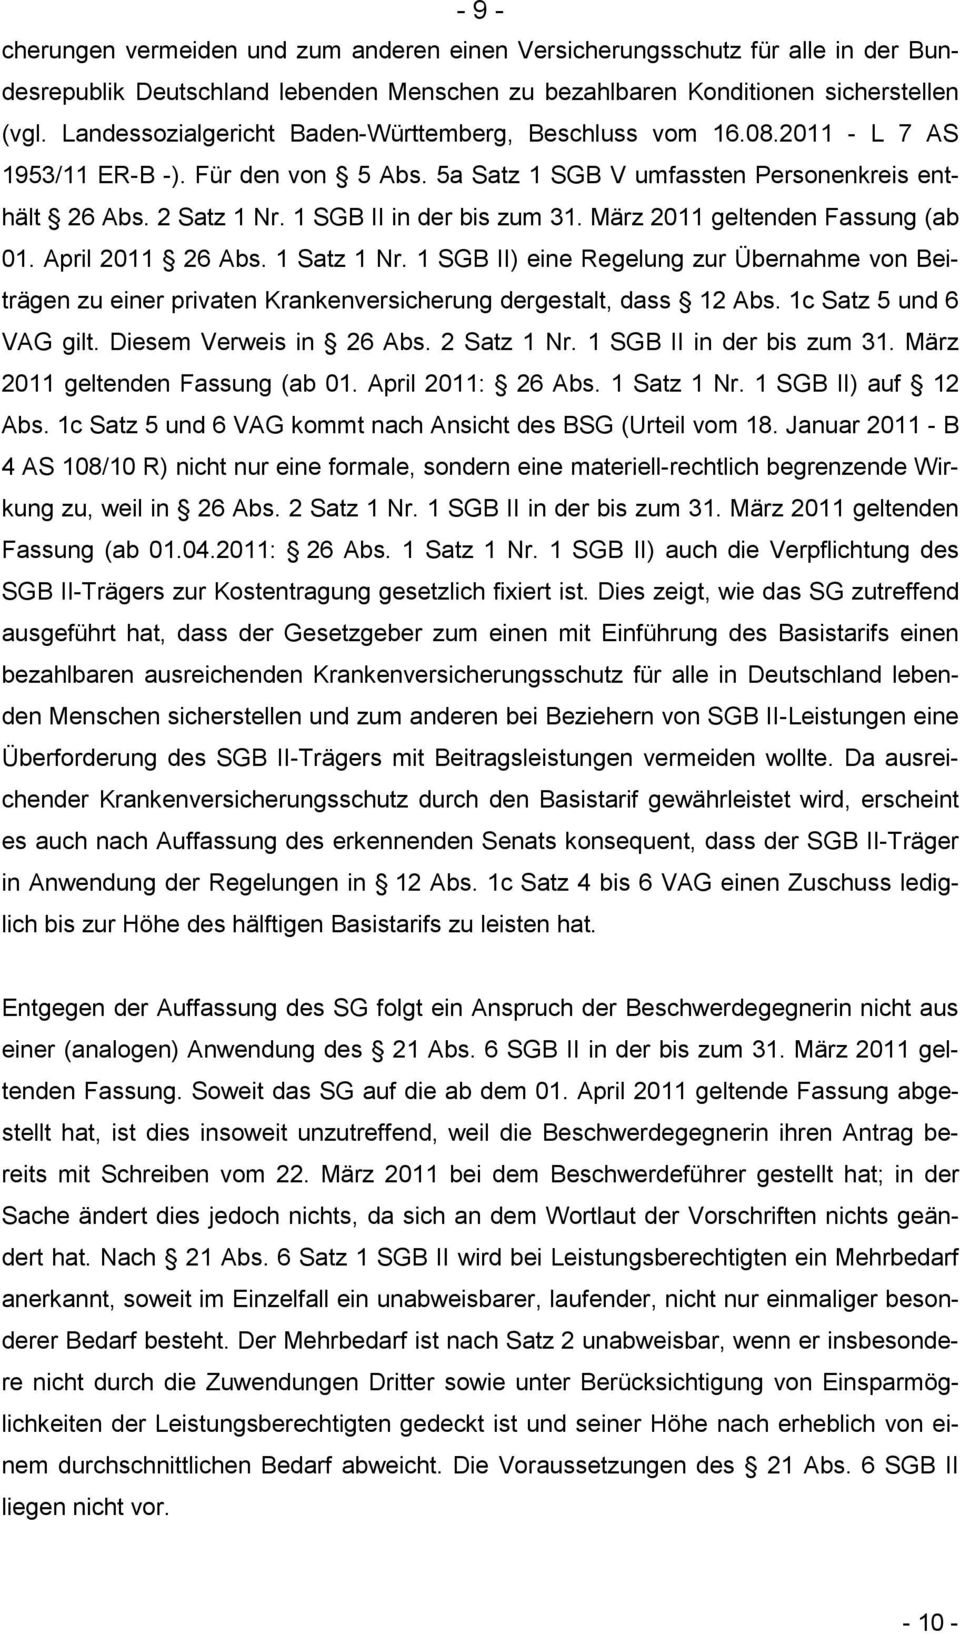 1 SGB II in der bis zum 31. März 2011 geltenden Fassung (ab 01. April 2011 26 Abs. 1 Satz 1 Nr.